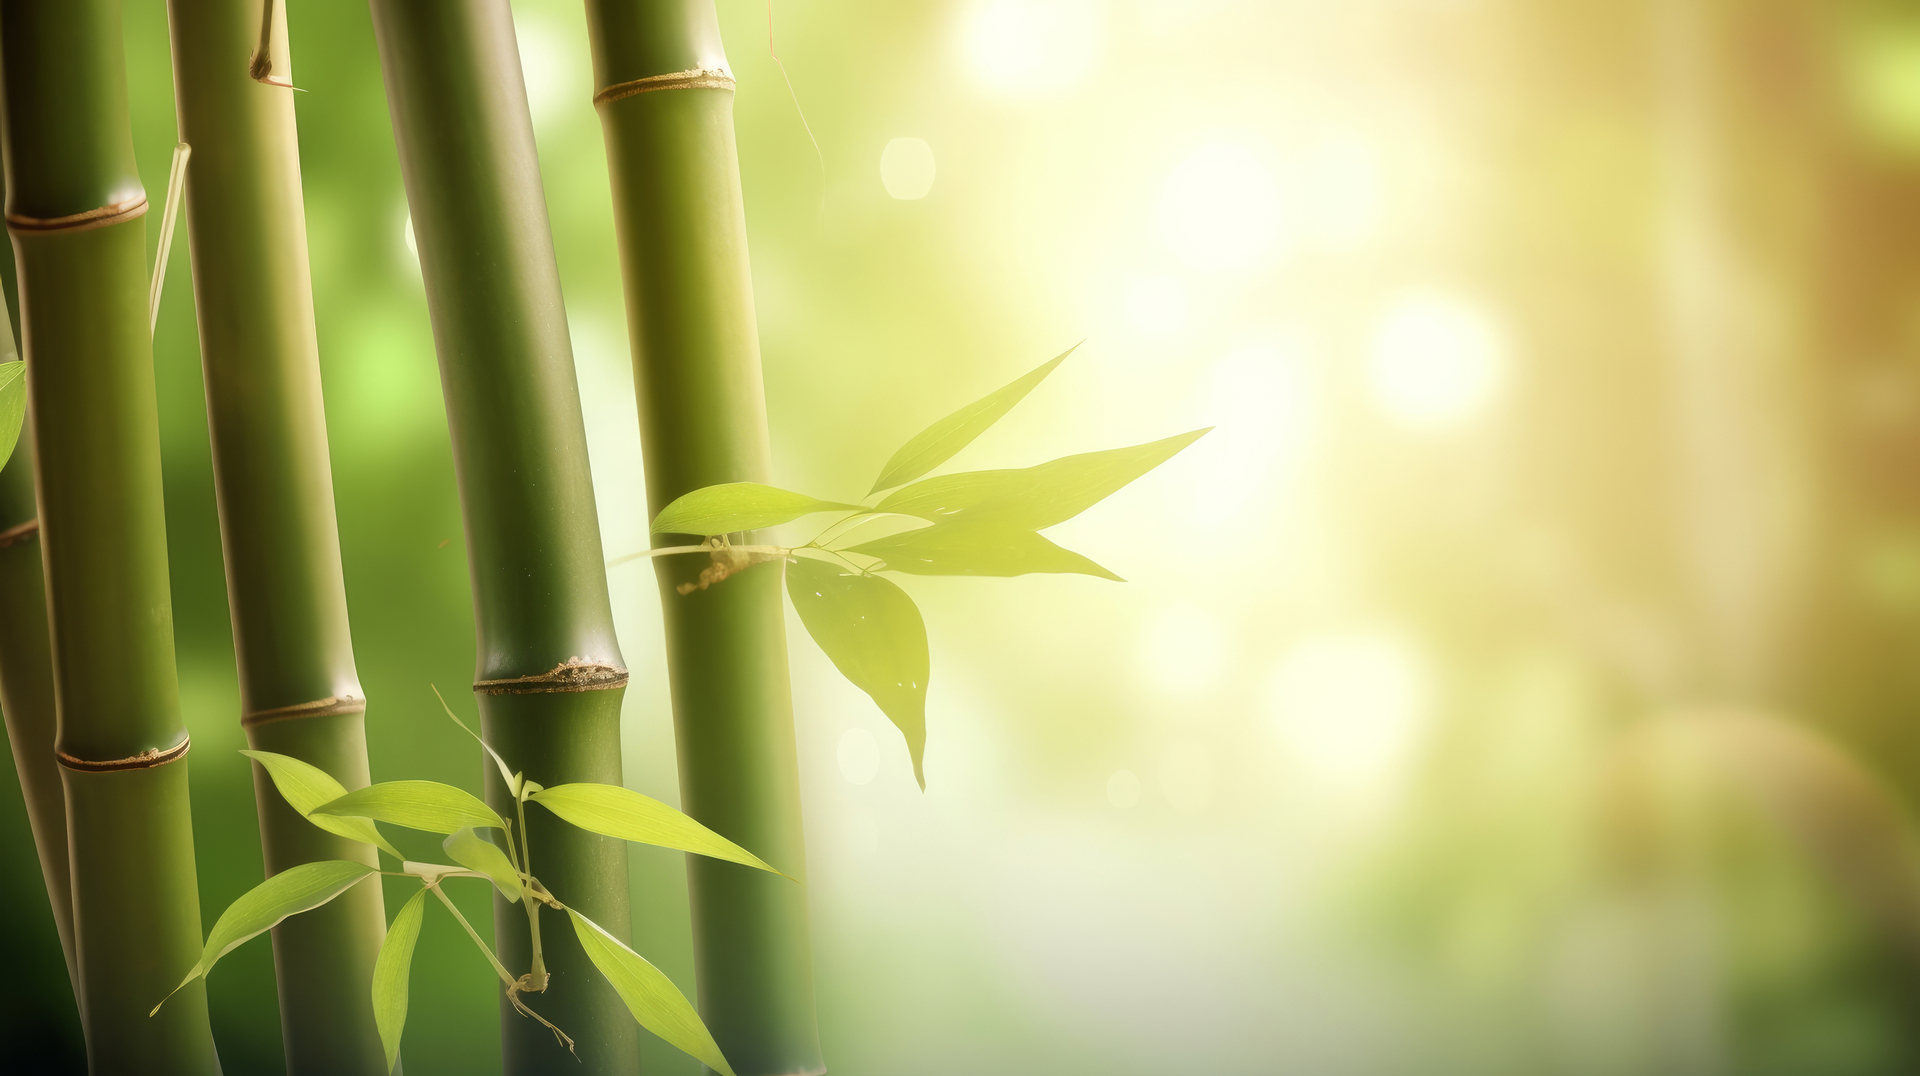 Obrazek przedstawia uroczy krajobraz z bambusem ogrodowym. W centrum kadru widoczny jest wysoki bambus o gładkich, zielonych łodygach, które pięknie wydają się przechylać pod wpływem delikatnego wiatru. W tle widać malownicze pagórki i kolorowe kwiaty, które nadają temu miejscu harmonijny i spokojny charakter